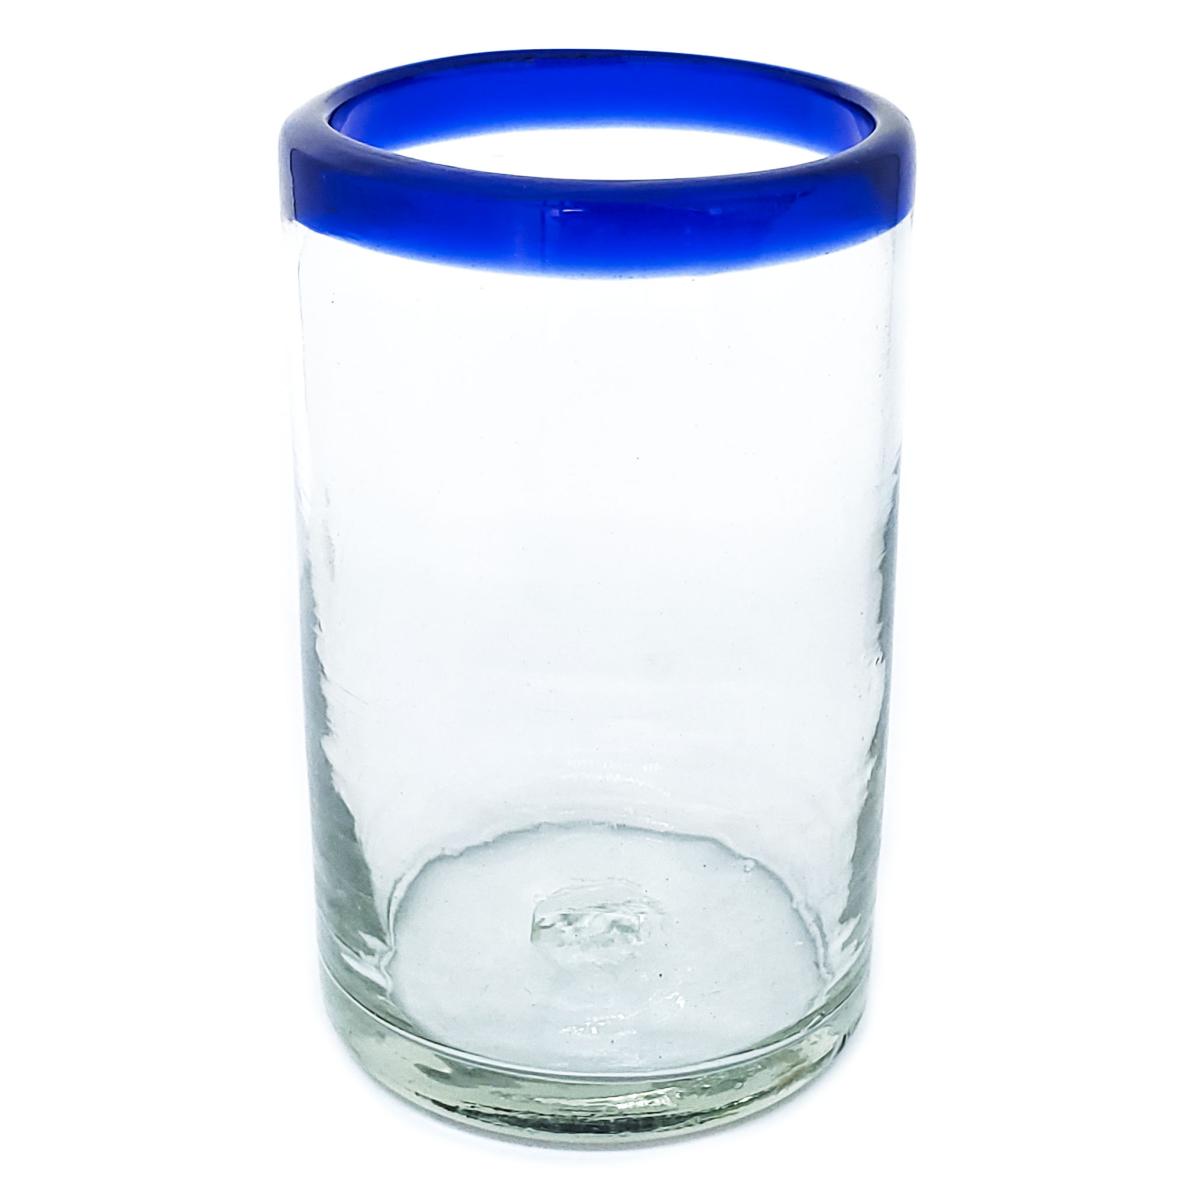 Ofertas / Juego de 6 vasos grandes con borde azul cobalto, 14 oz, Vidrio Reciclado, Libre de Plomo y Toxinas / stos artesanales vasos le darn un toque clsico a su bebida favorita.